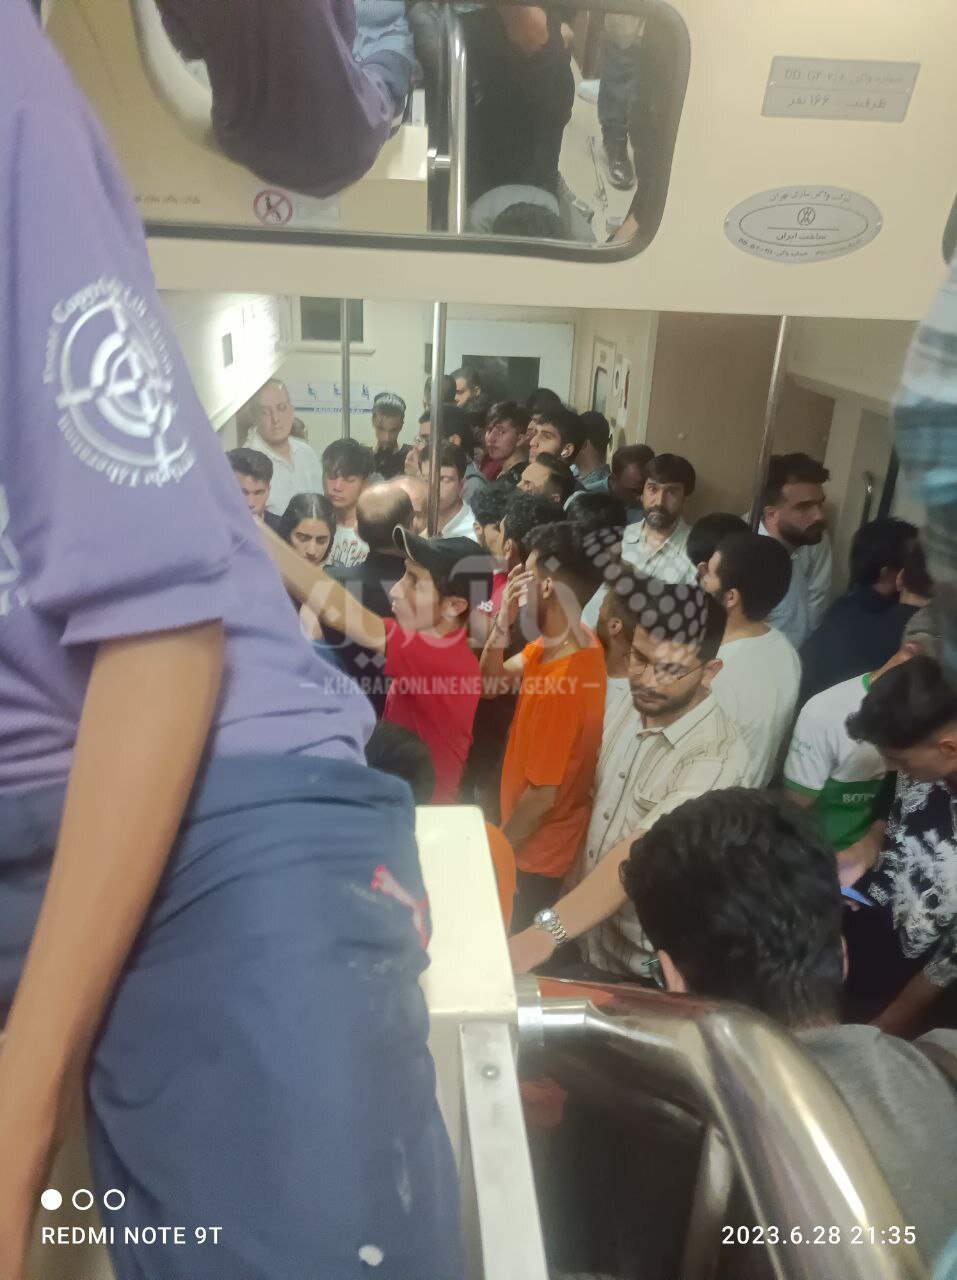 عکس | جمعیت کلافه از گرما در متروی تهران - کرج